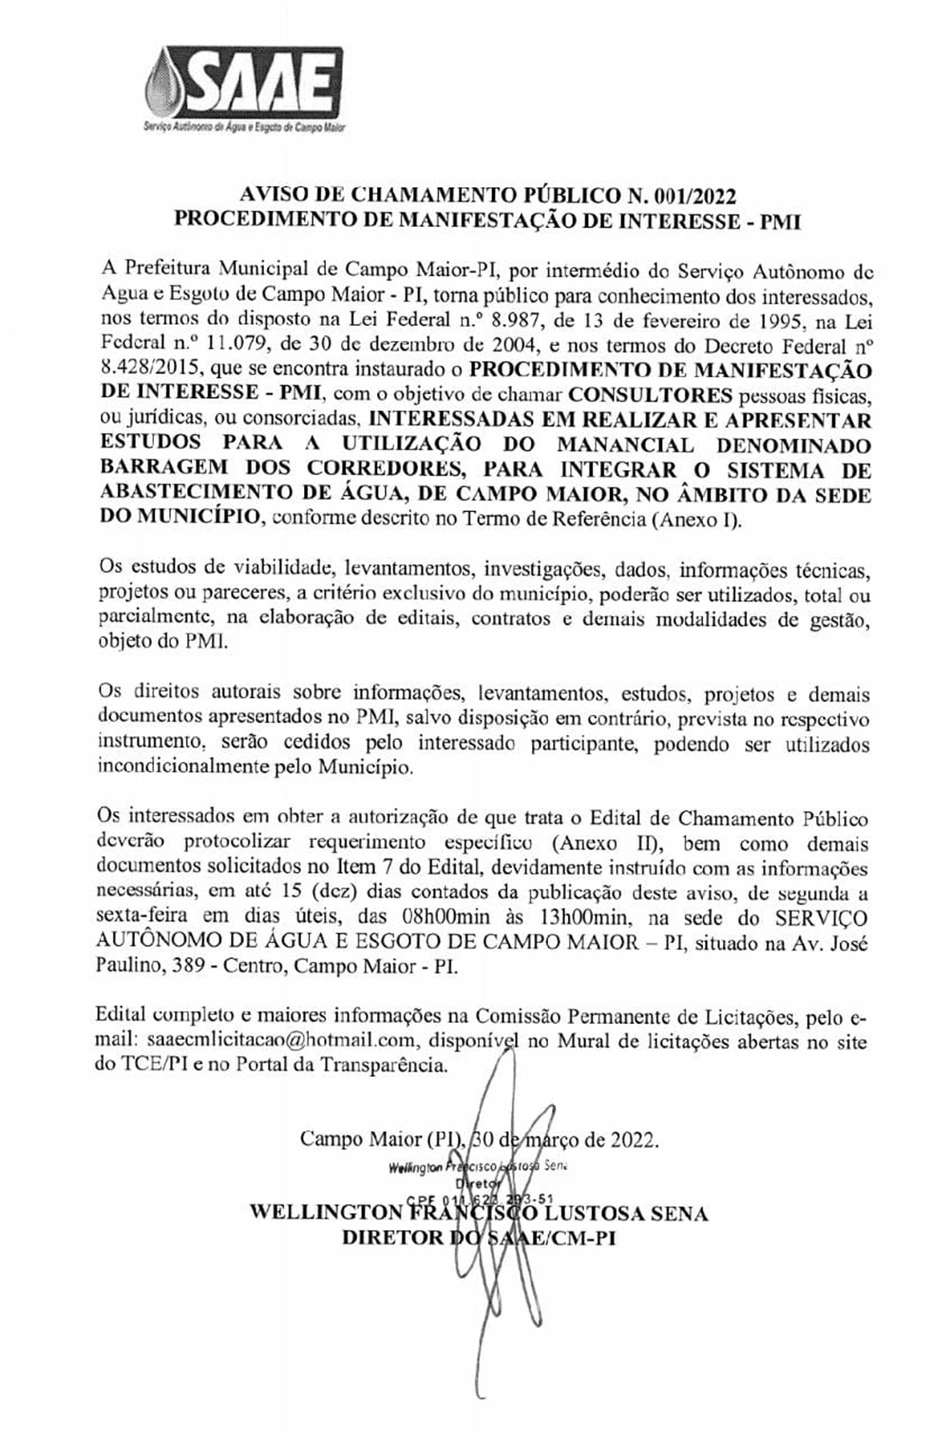 Procedimento de Manifestação de Interesse realizado pela Prefeitura de Campo Maior